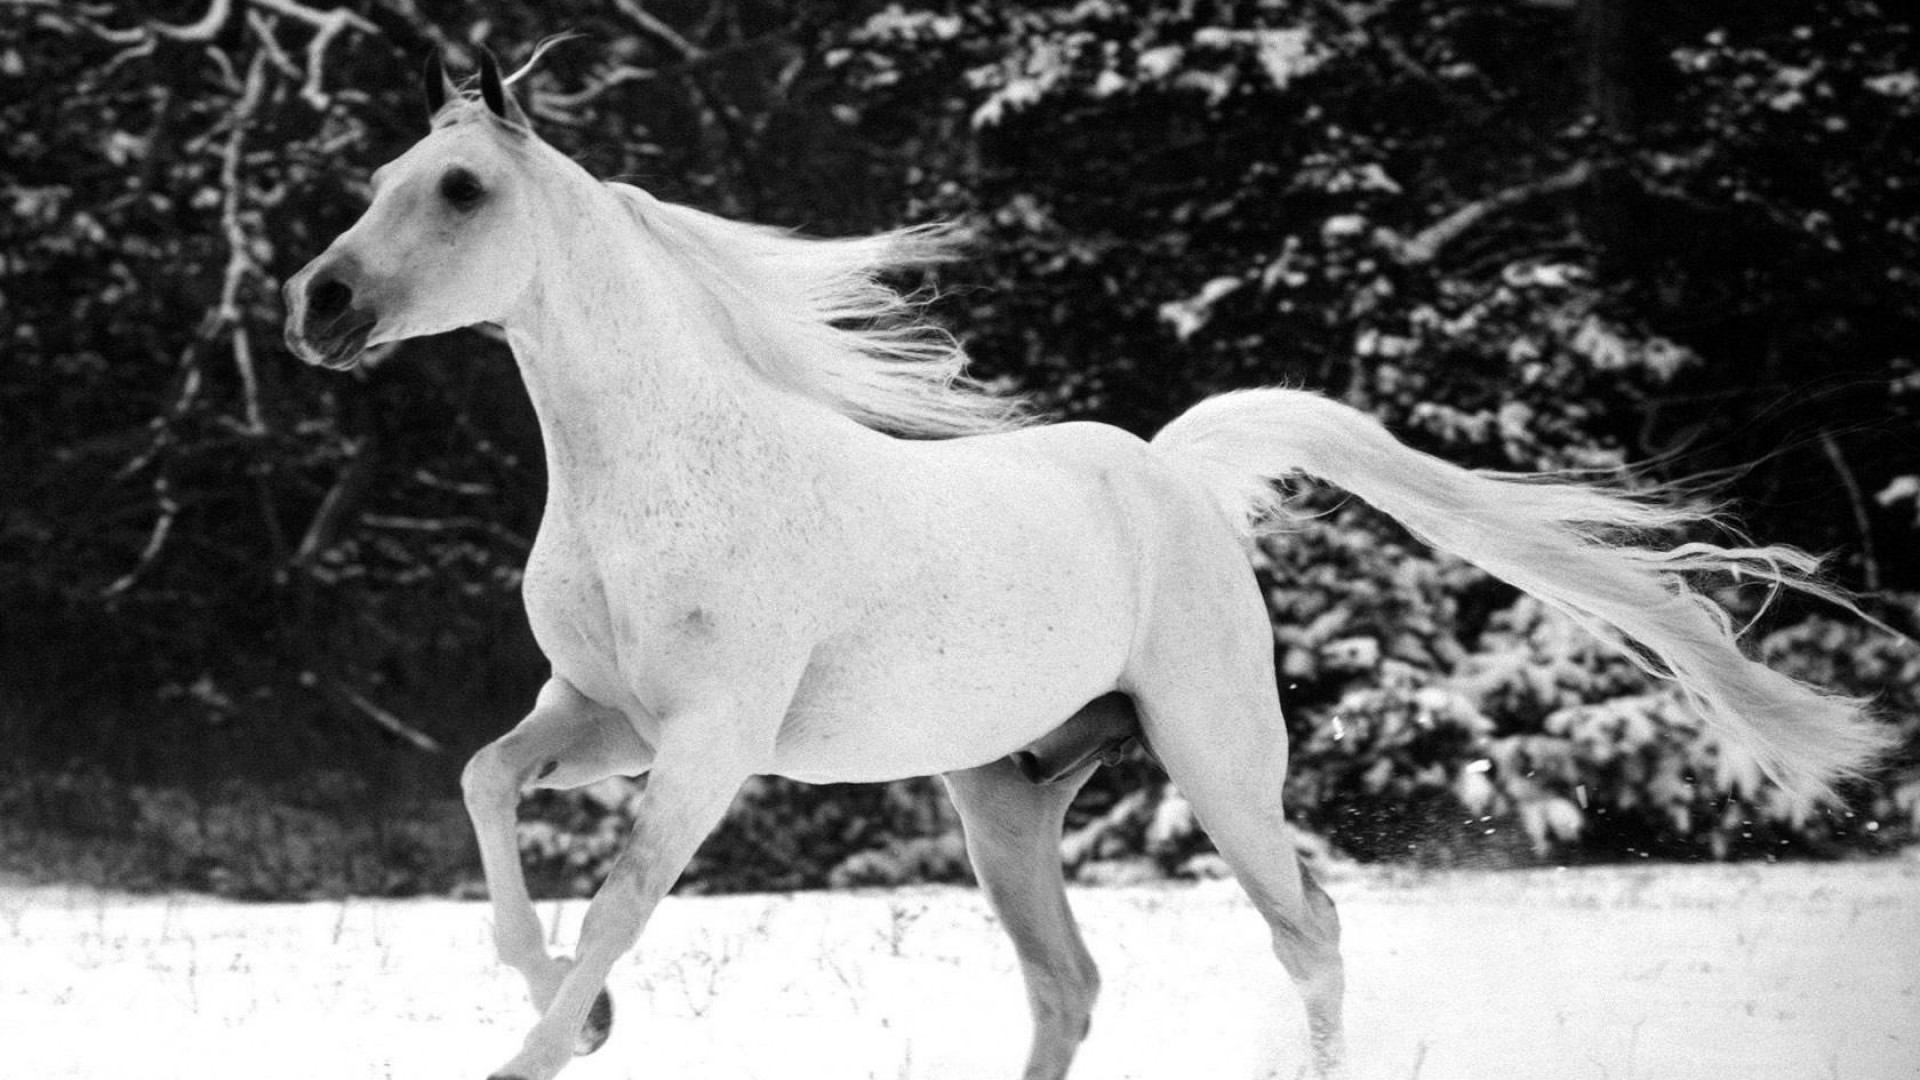 fond d'écran blanc hd,cheval,blanc,crinière,noir et blanc,photographie monochrome